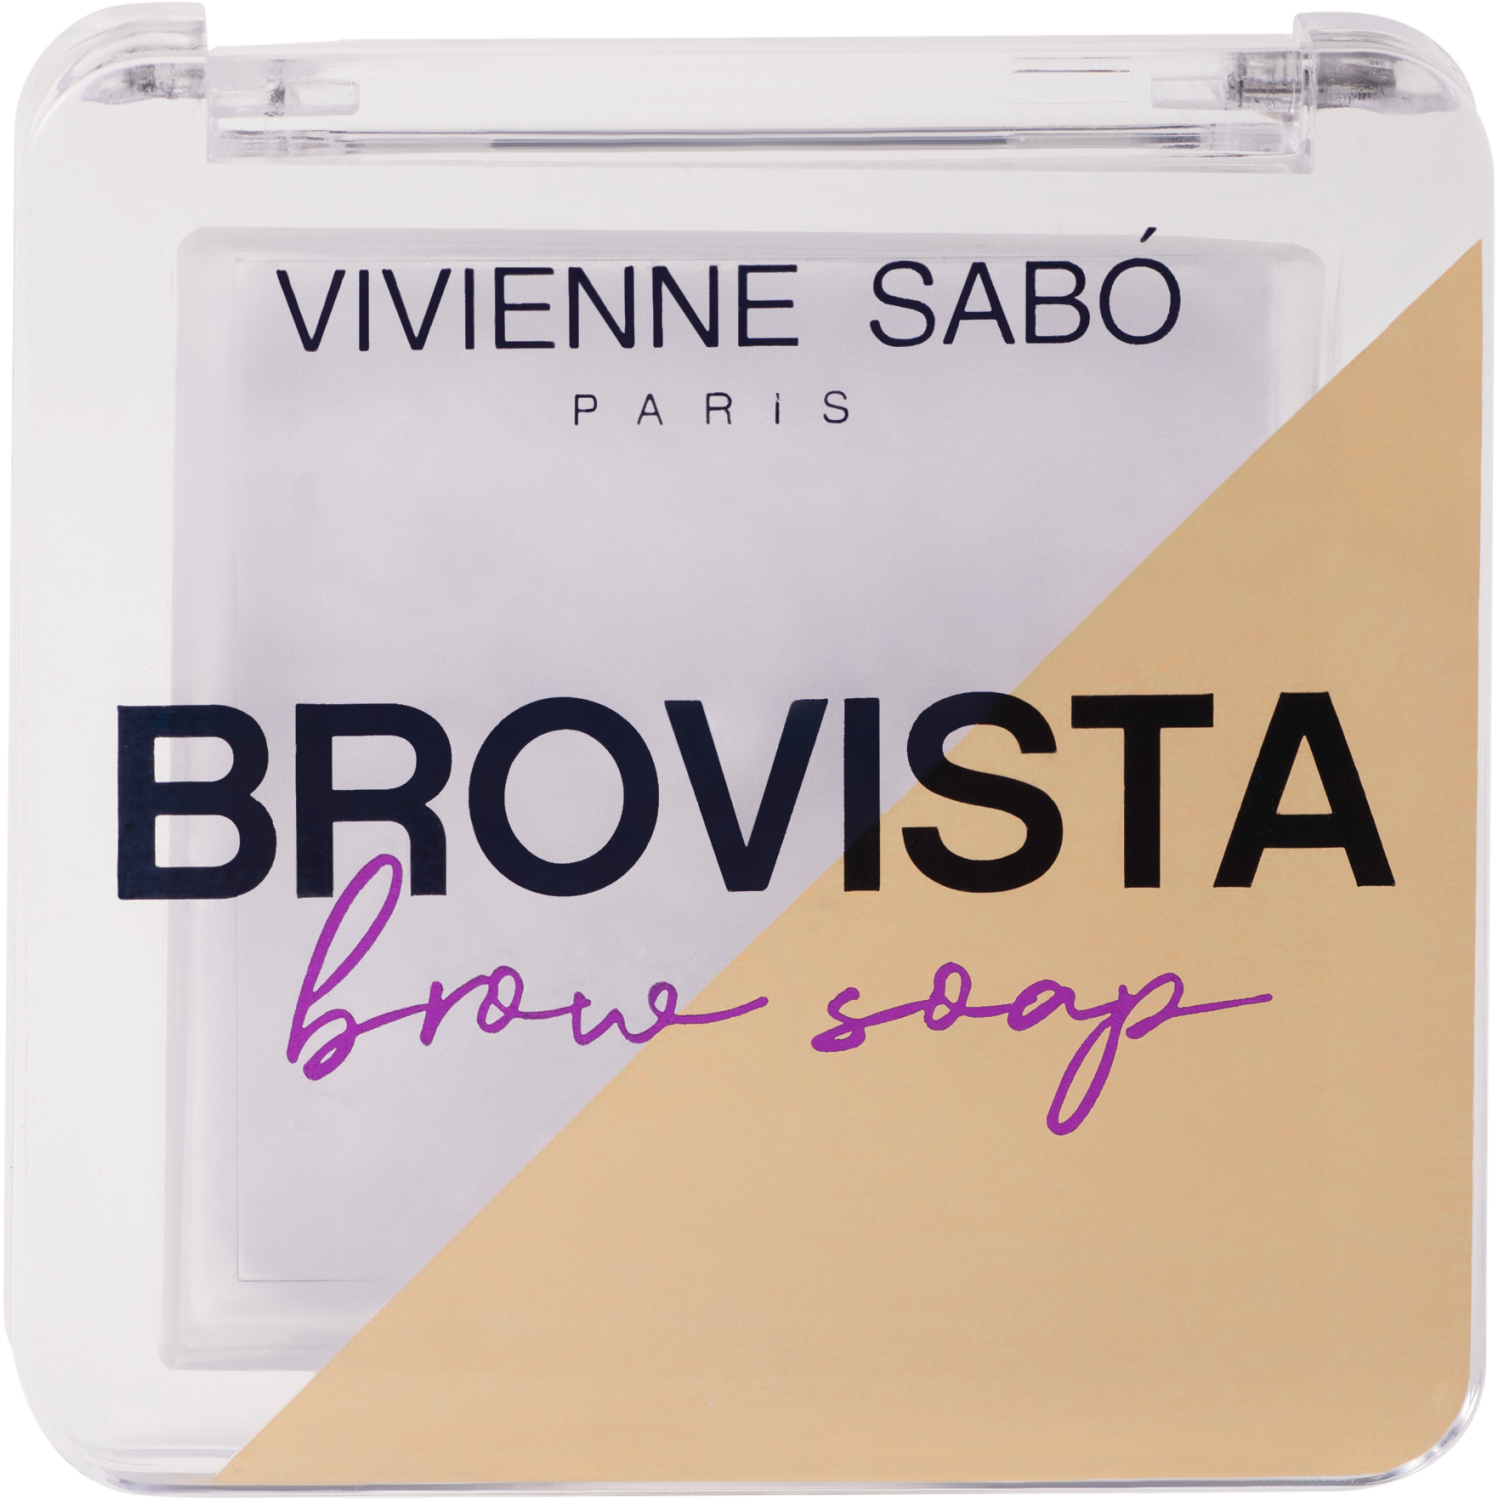 Фиксатор для бровей Vivienne Sabo Brovista brow soap, эффект ламинирования бровей, прозрачно-белесый, 3гр. гель для бровей и ресниц vivienne sabo фиксирующий в ассортименте